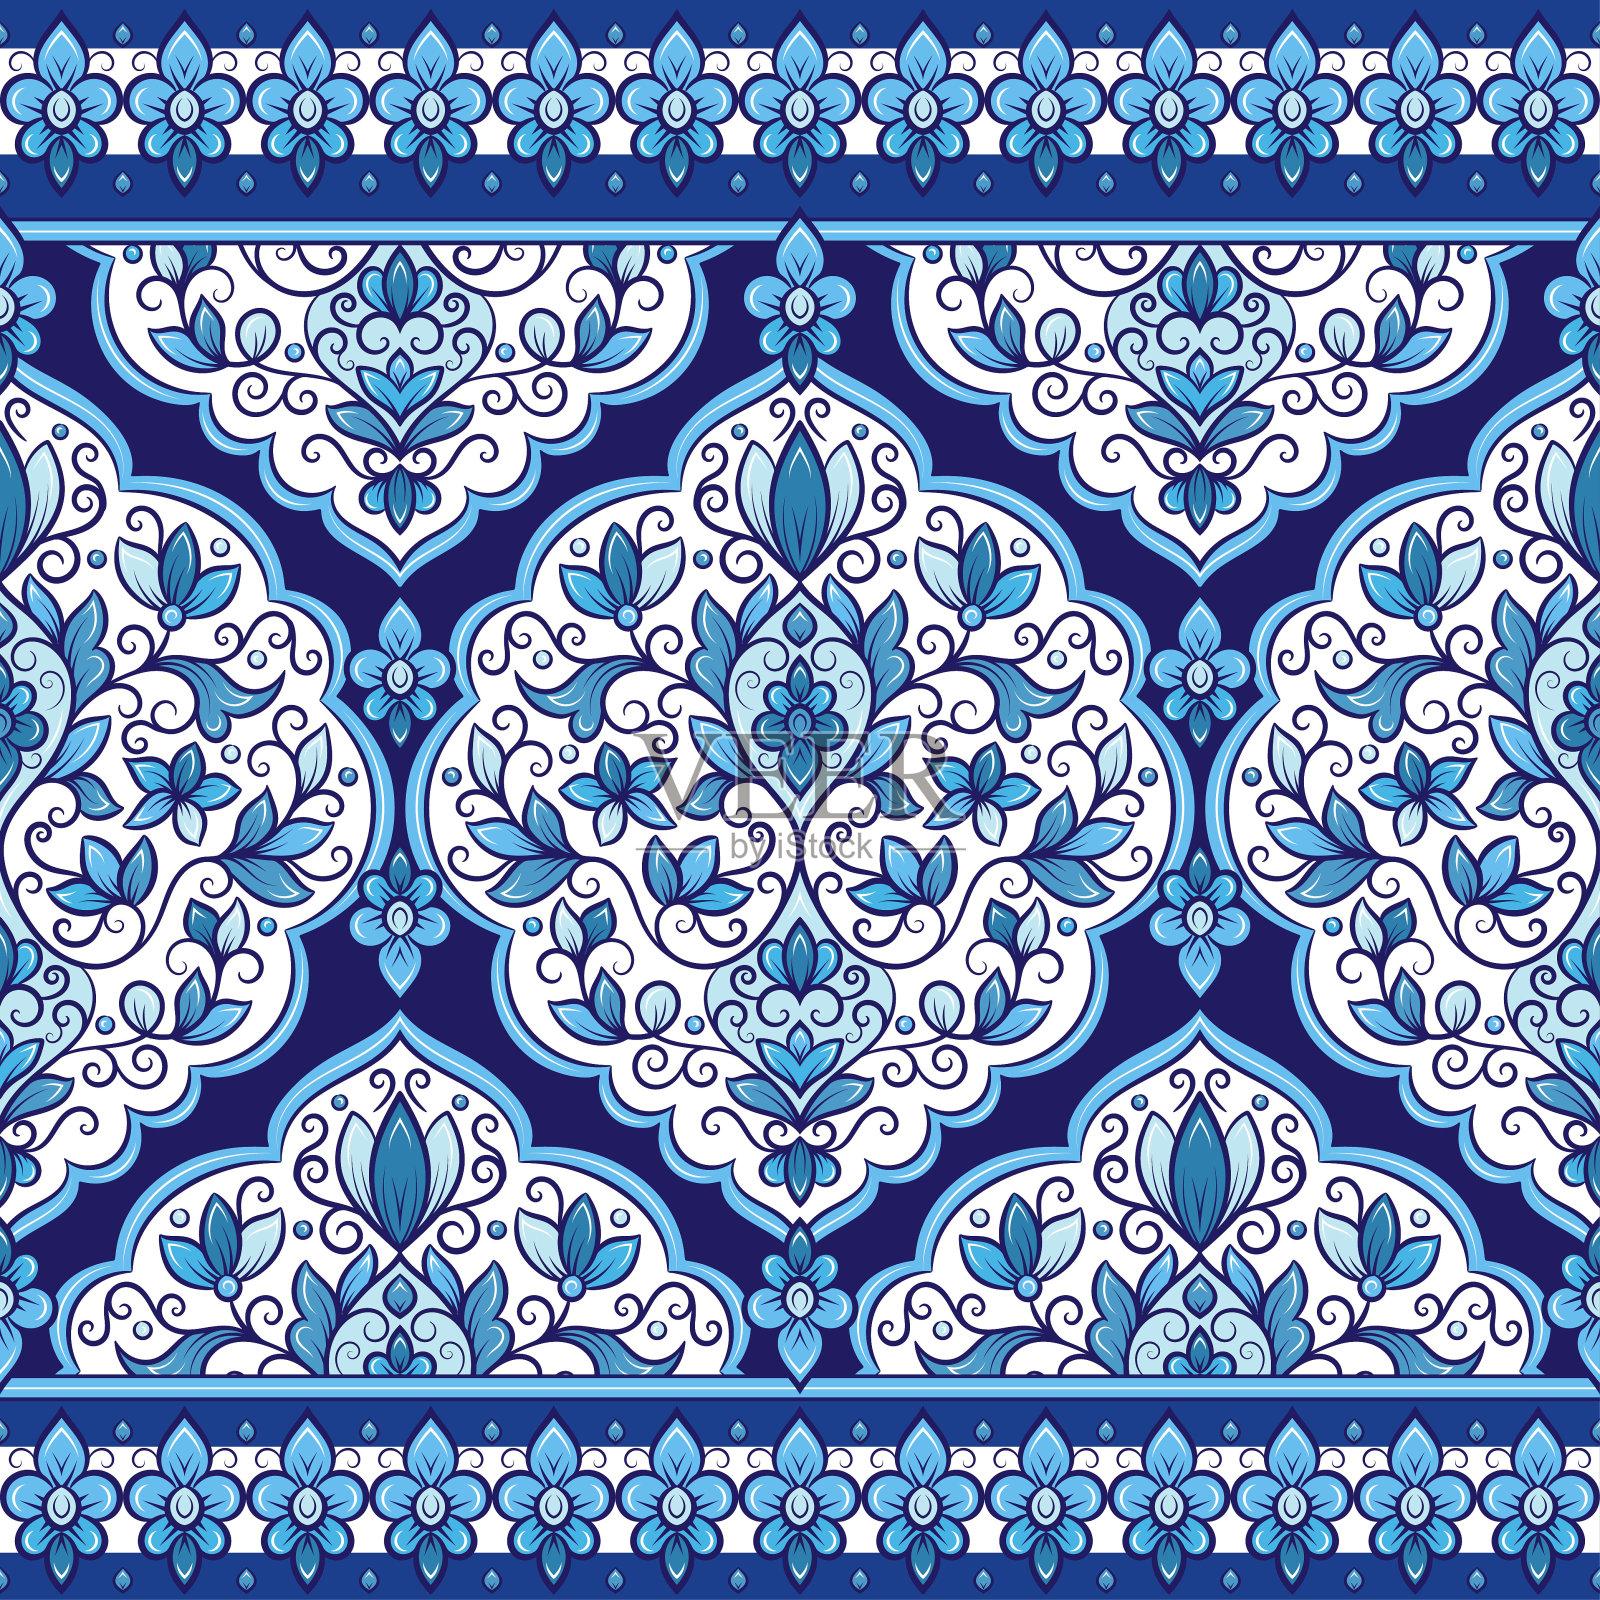 蓝色和白色的花无缝图案，带有观赏条纹。传统的东方图案。古董装饰模板。佩斯利装饰元素。非常适合布料和纺织品。插画图片素材